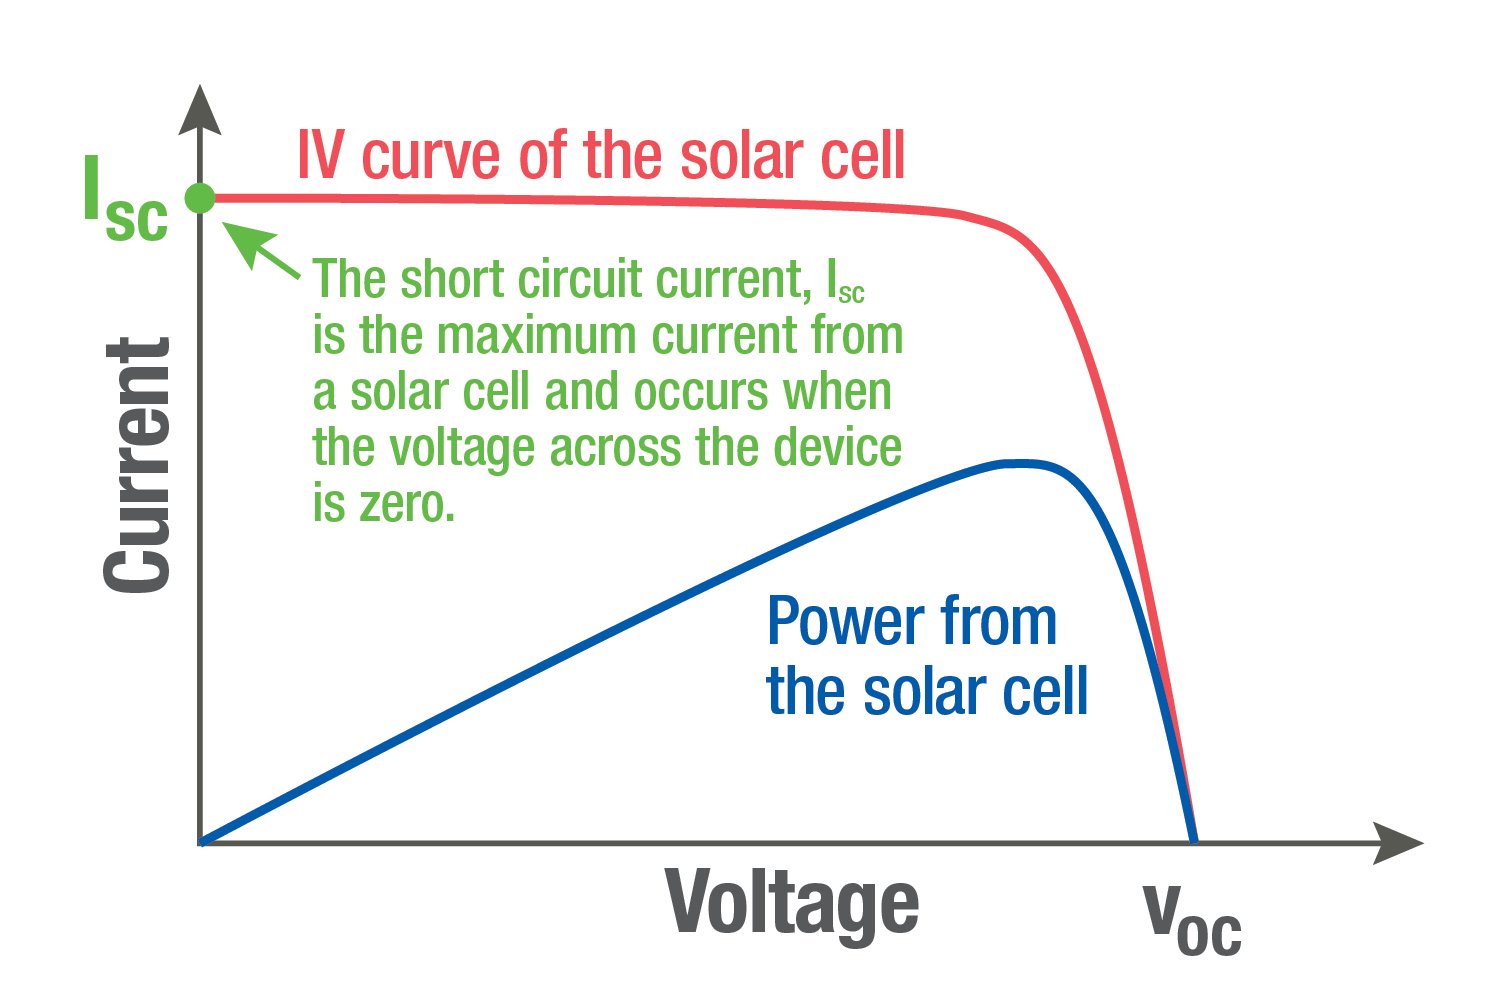 Diagramm, in dem die IV-Kurve der Solarzelle mit der Leistung der Solarzelle verglichen wird